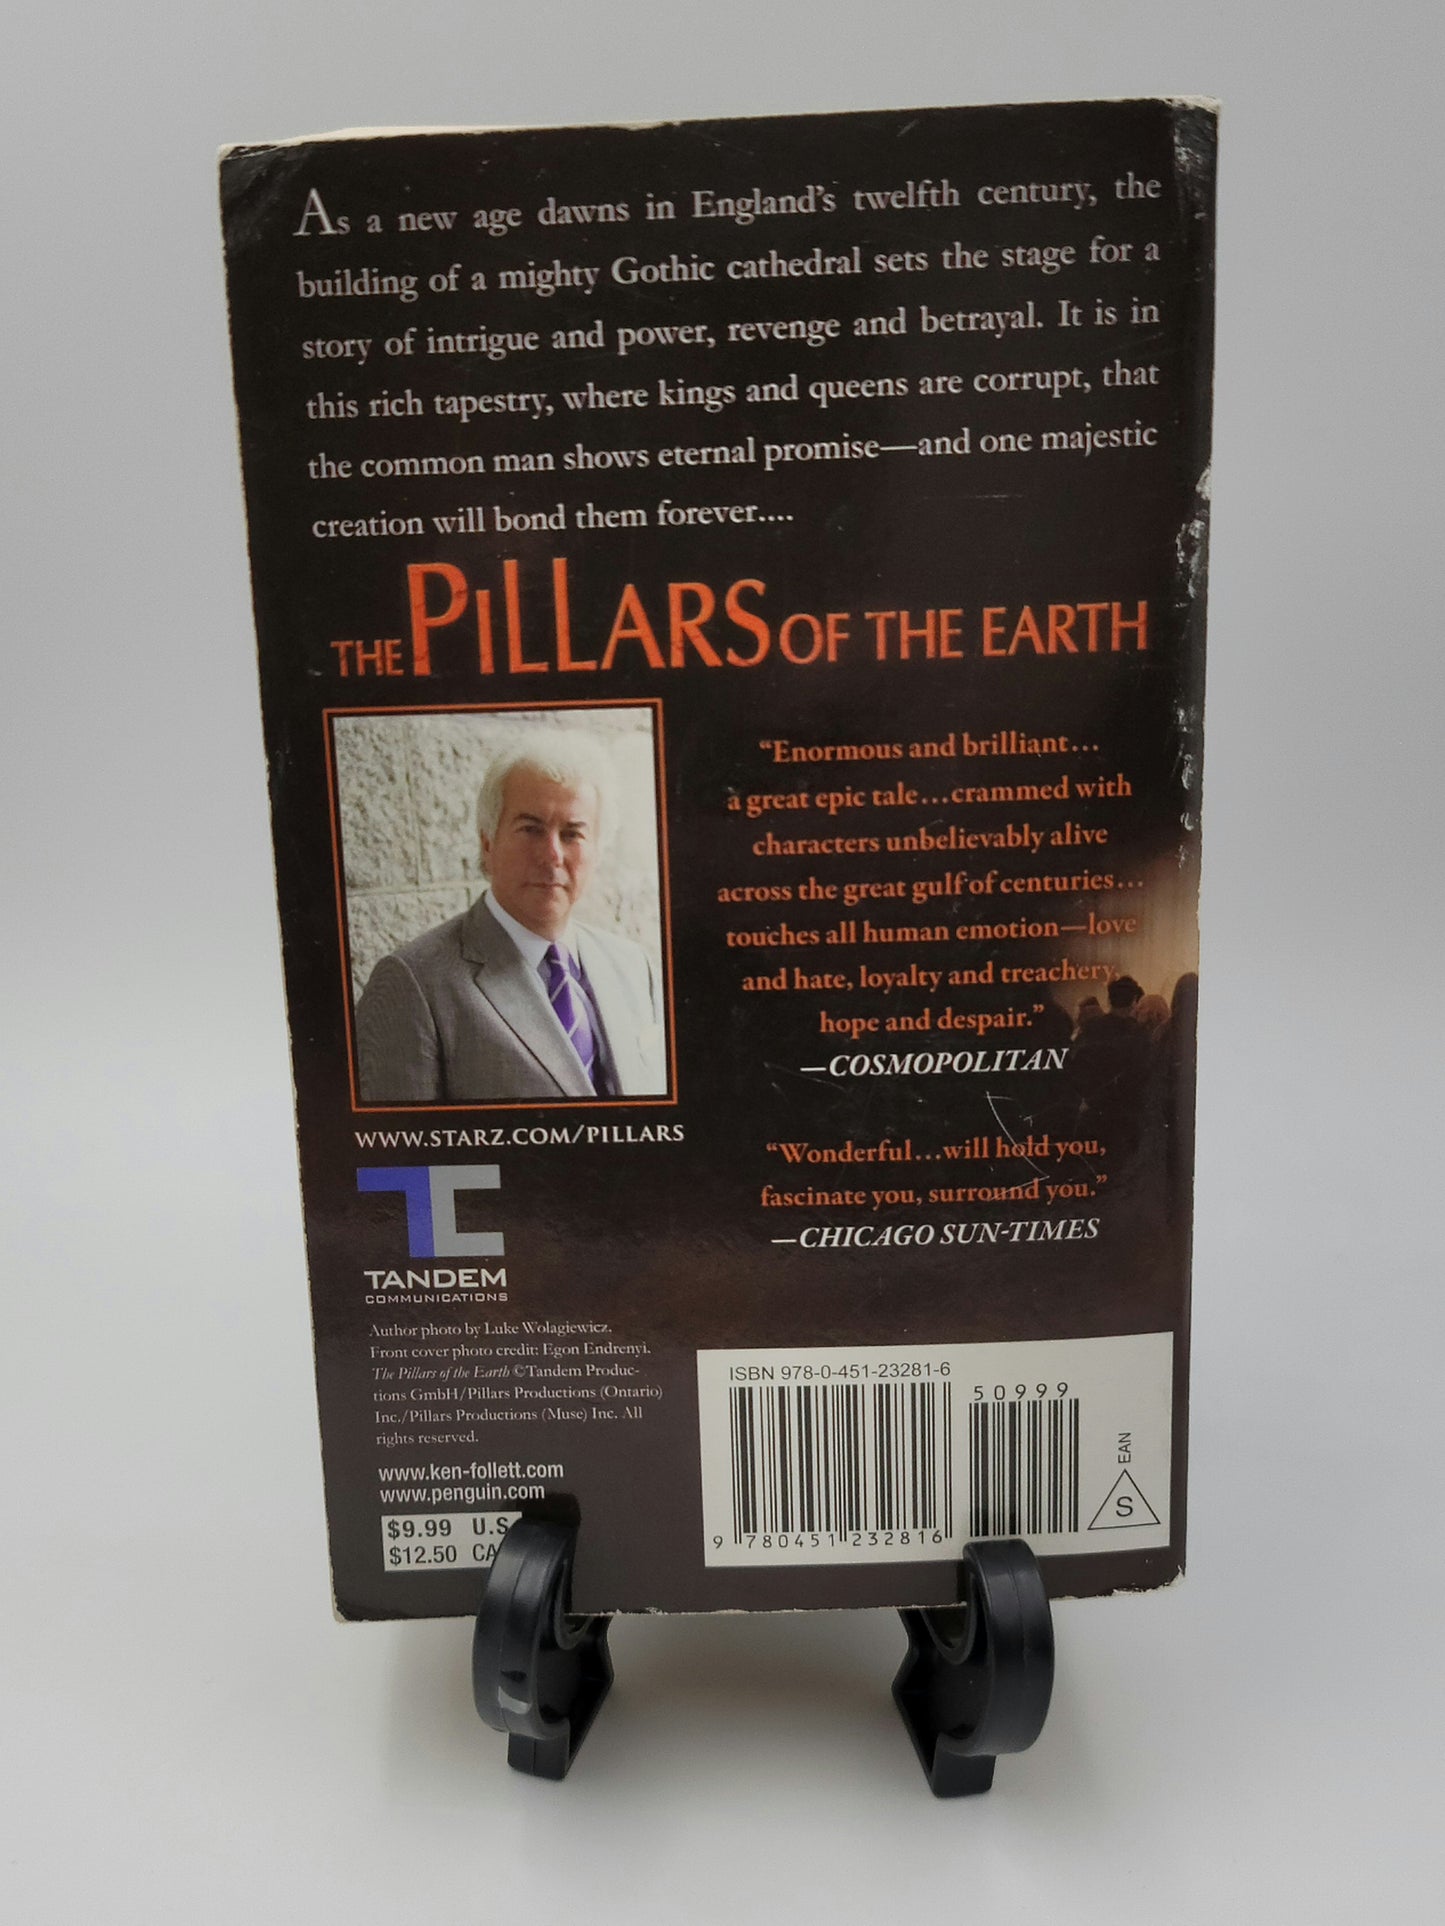 Pillars of the Earth by Ken Follett (Kingsbridge Series #1)